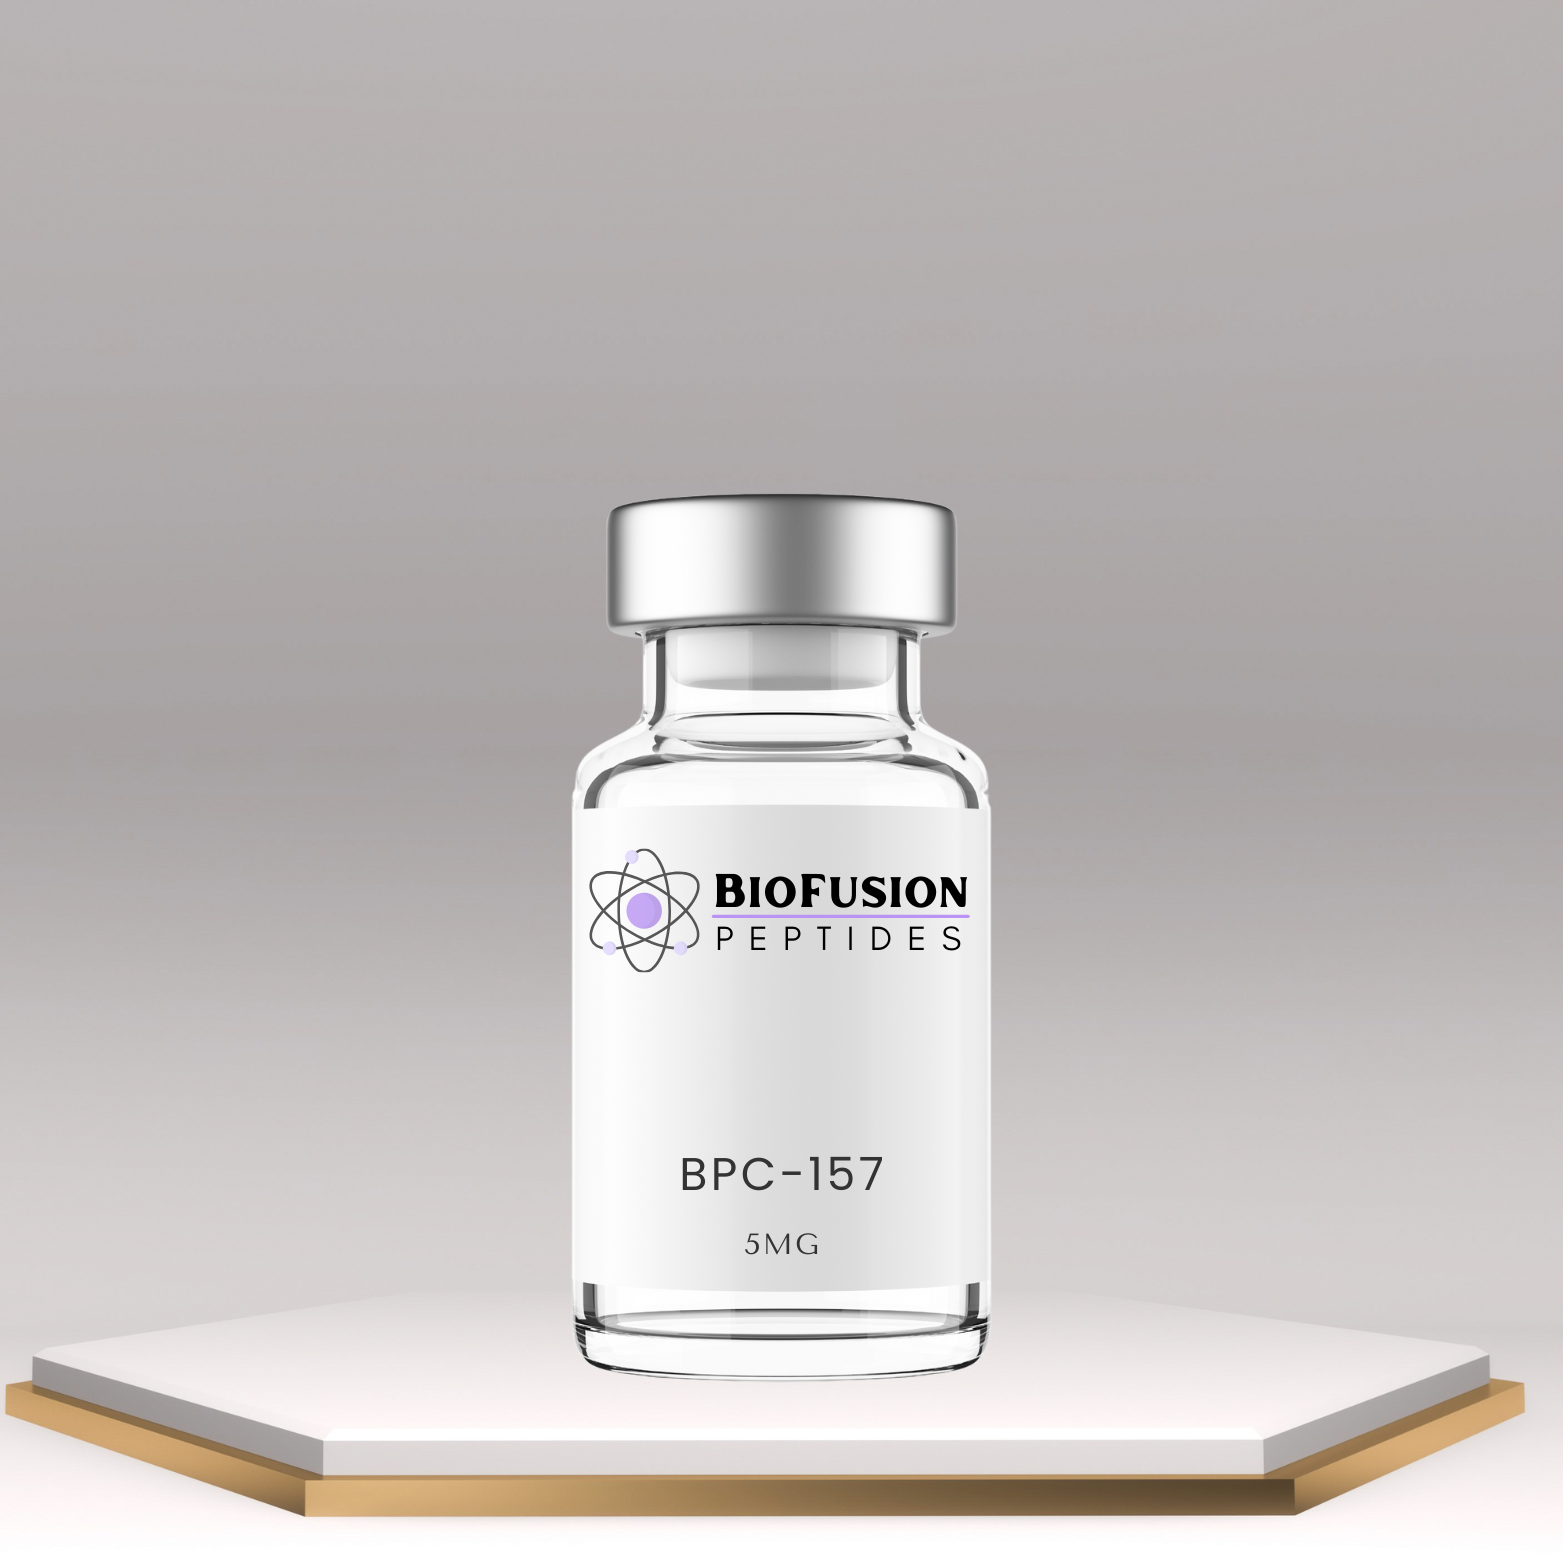 BioFusion Peptides BPC-157 5MG vial